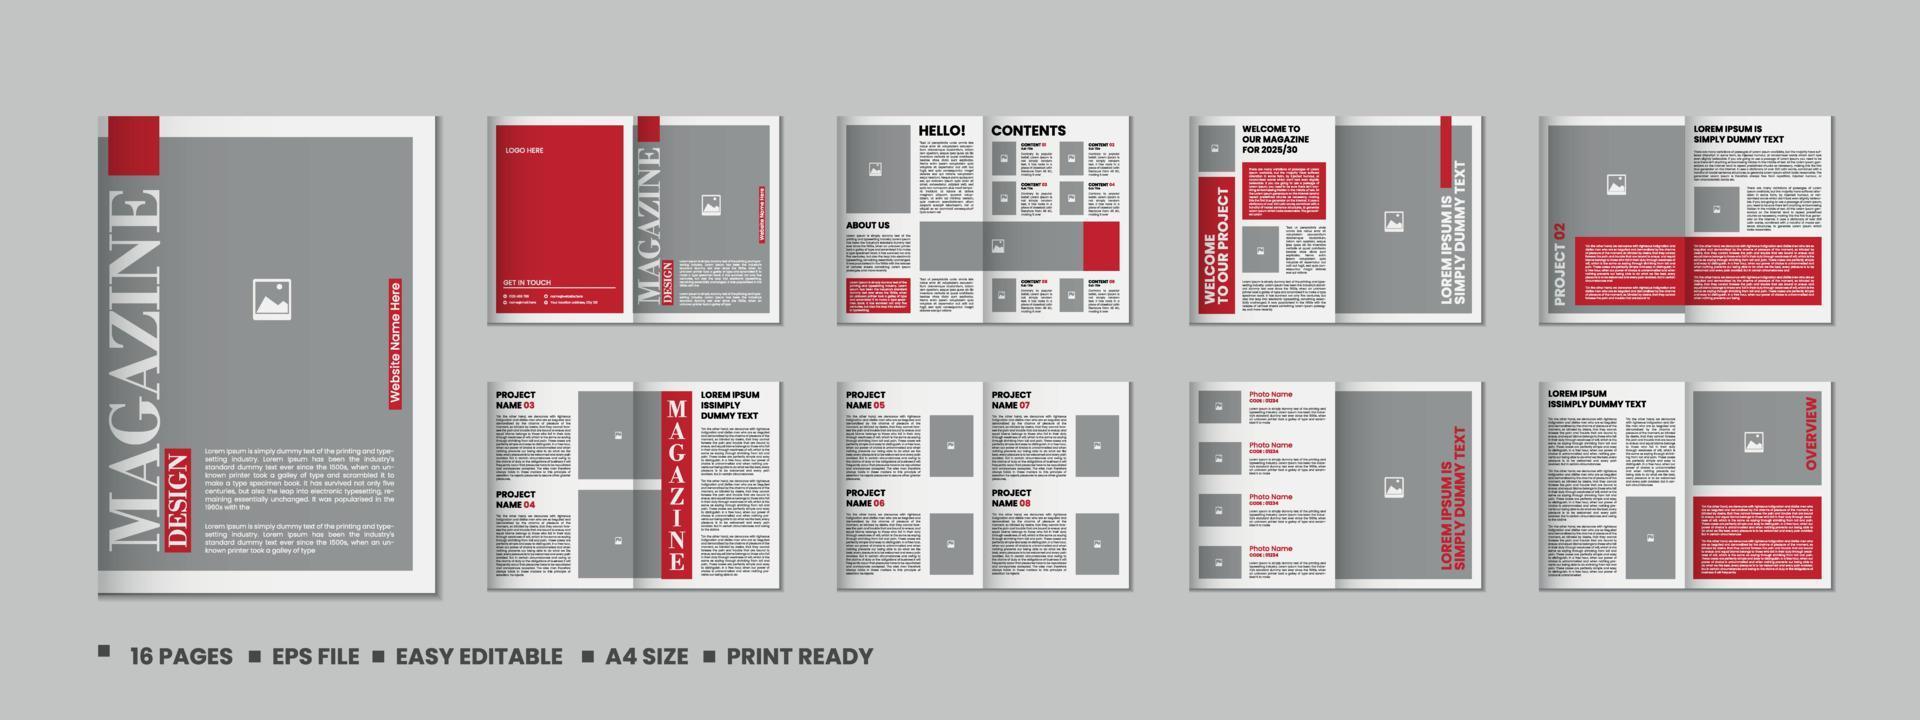 Portfolio Zeitschrift Vorlage Design oder 16 Seiten Mode Zeitschrift und a4 die Architektur Portfolio Design vektor